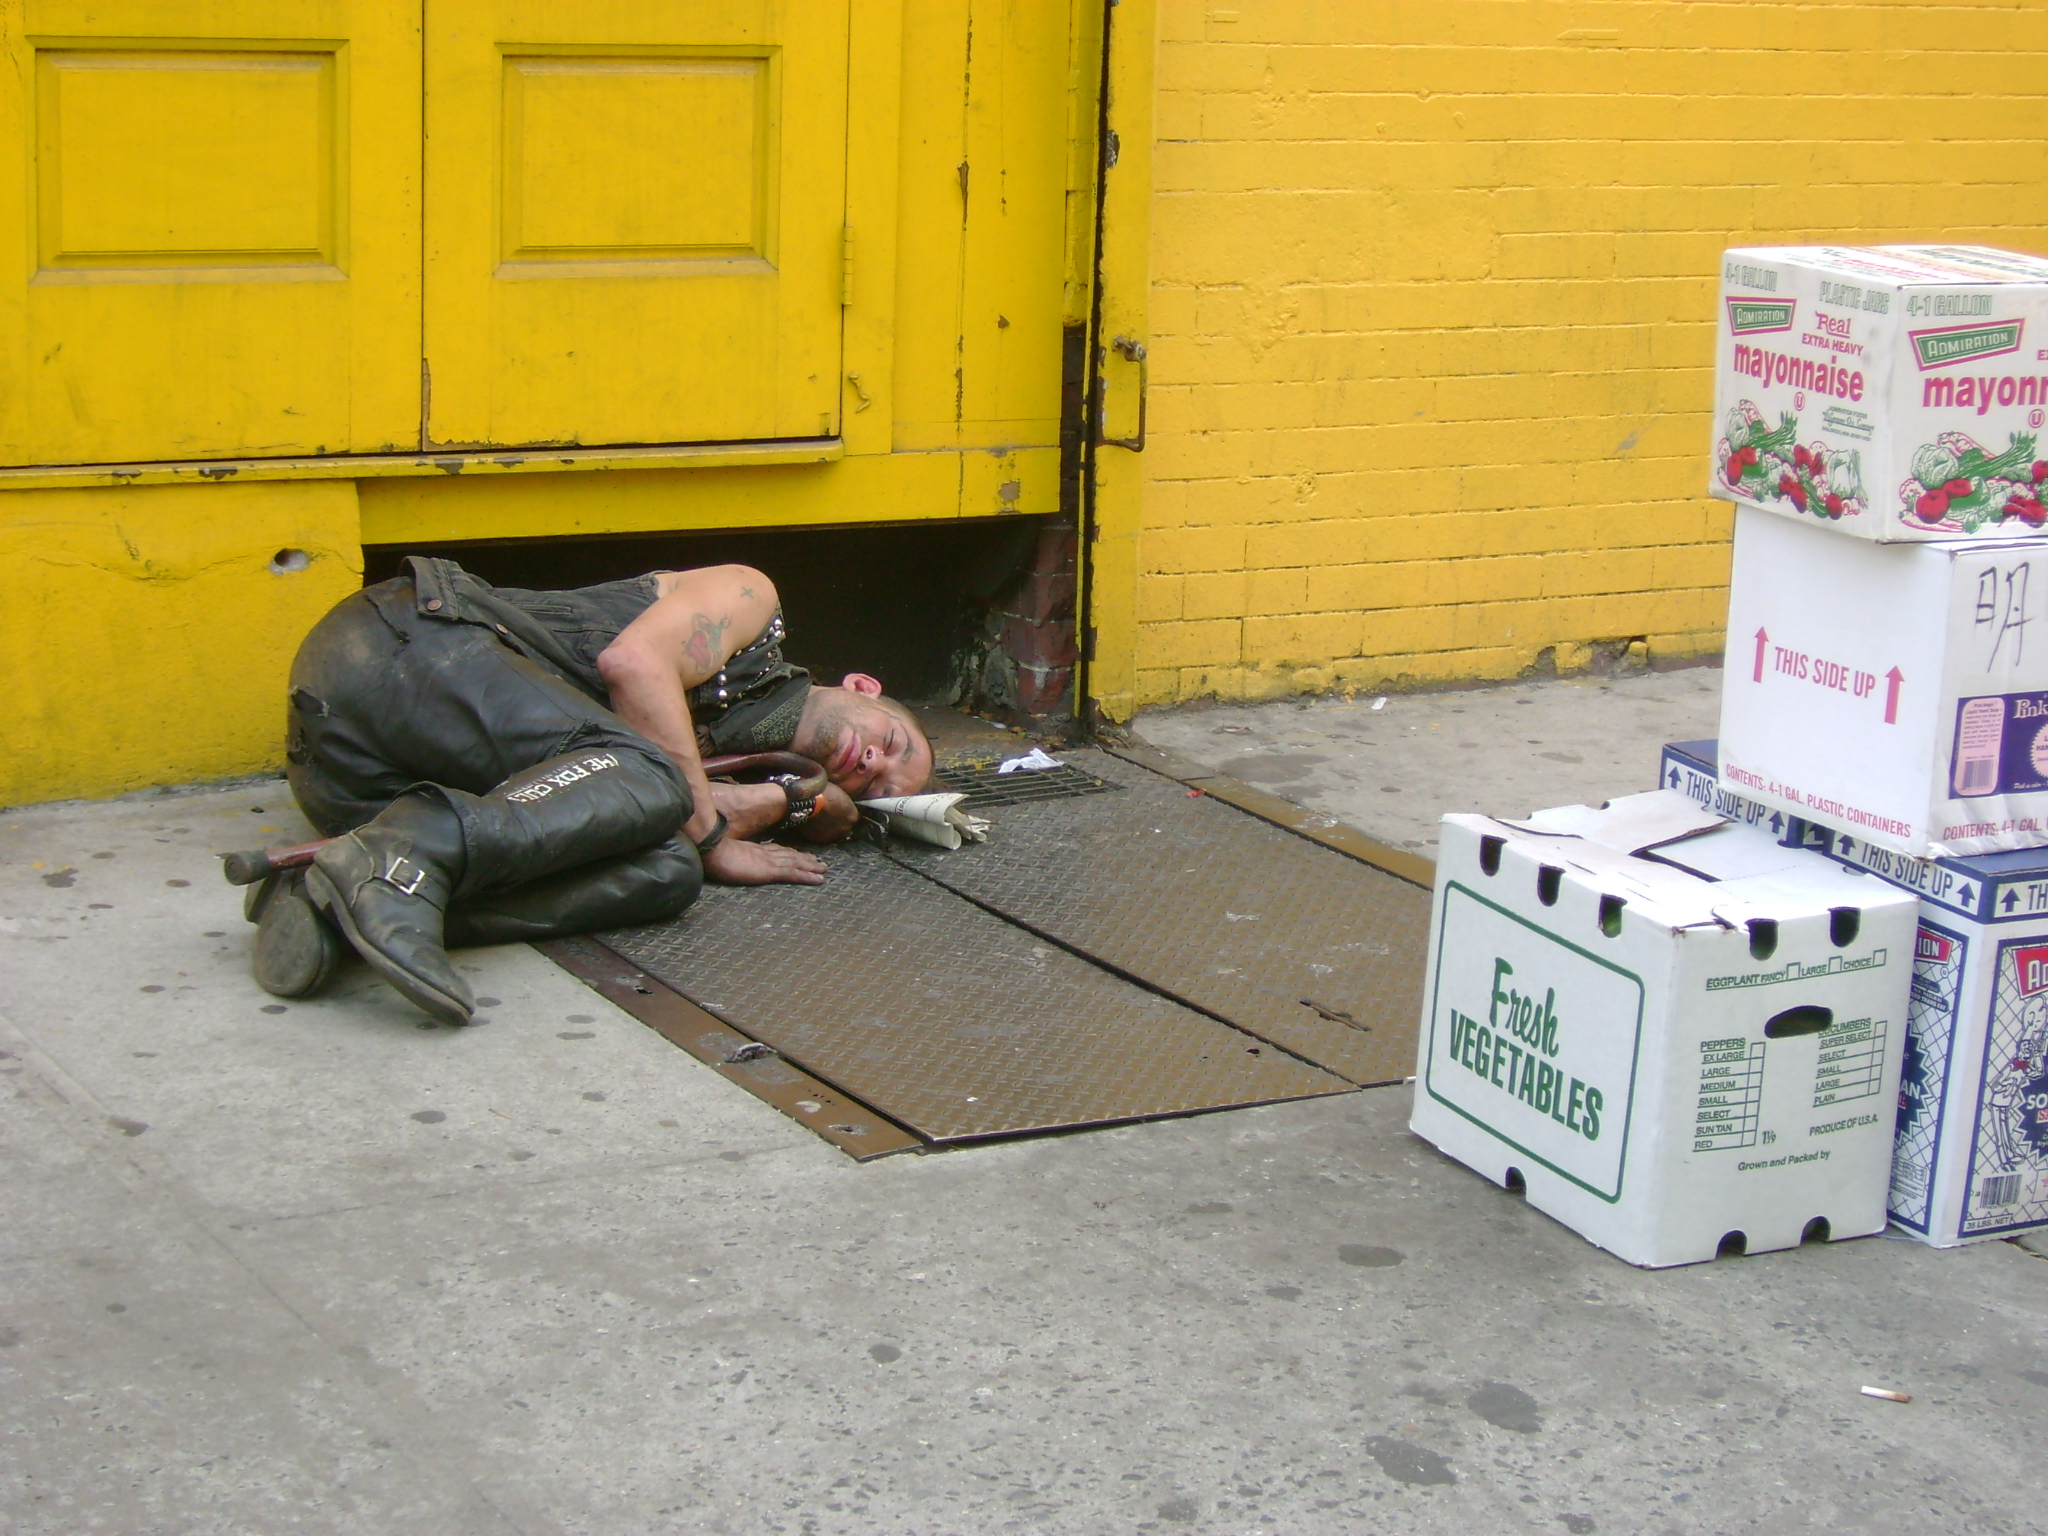 Homeless punk asleep on street